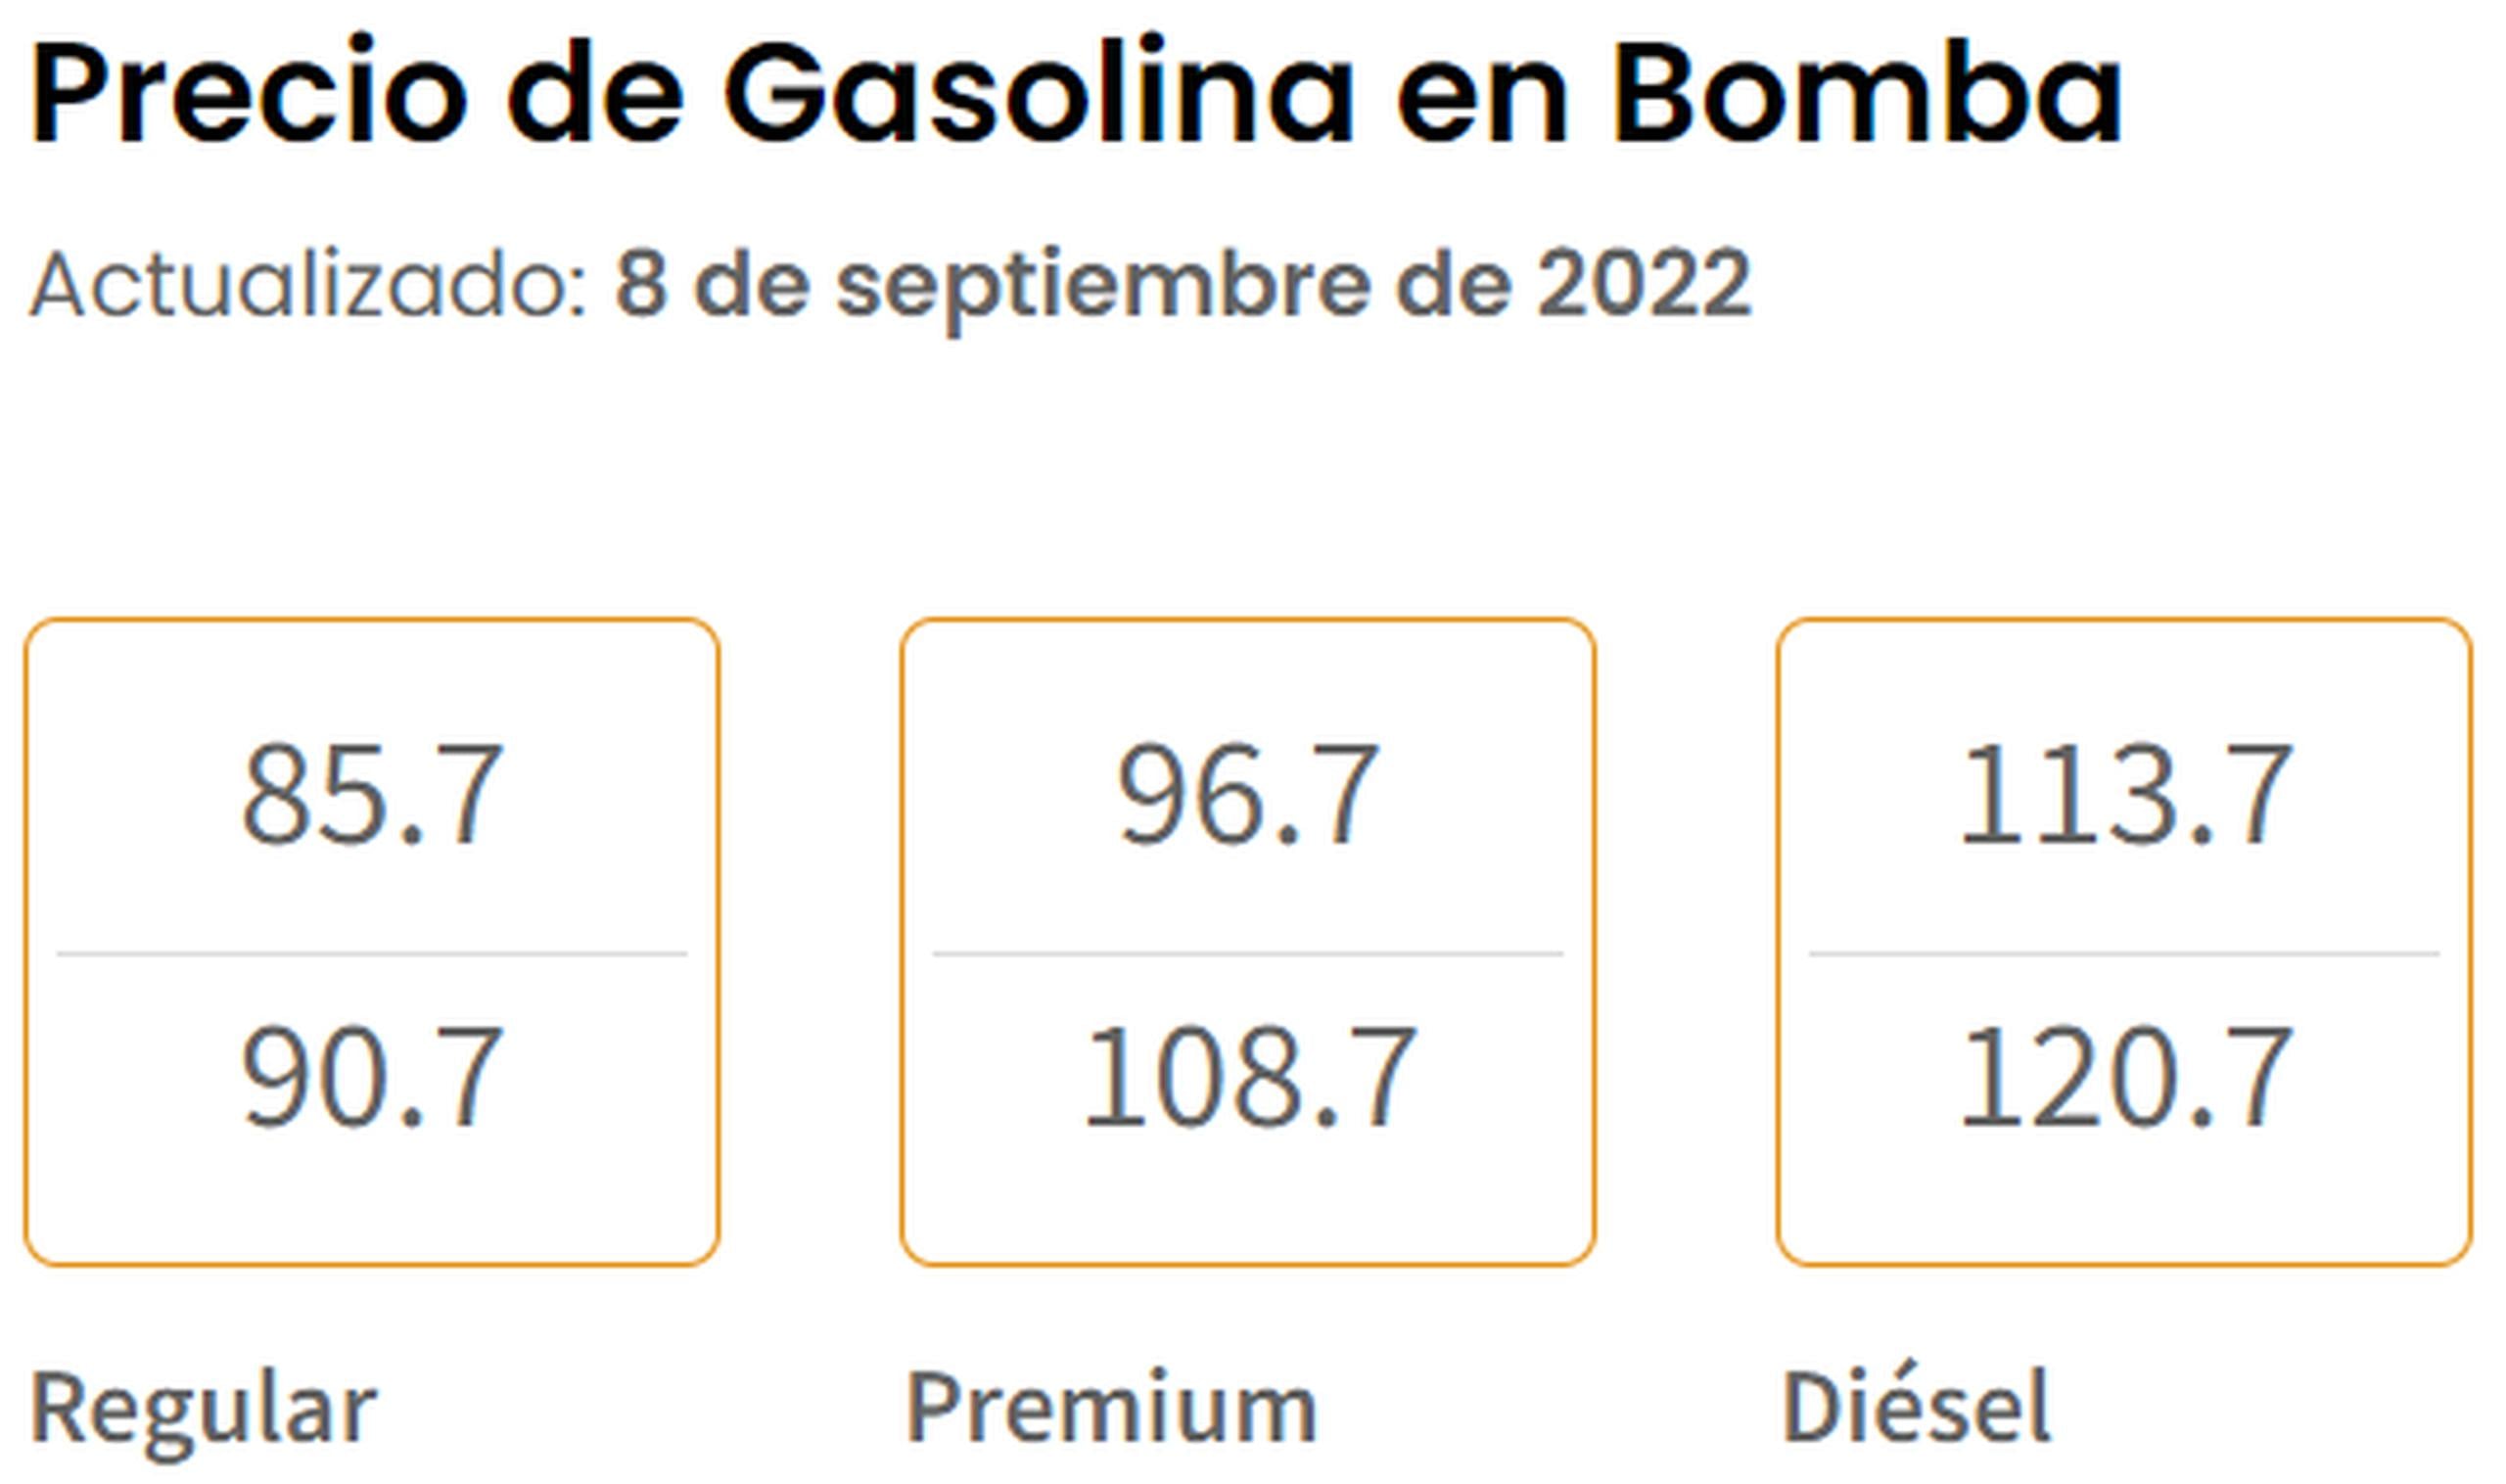 Precio de la gasolina en bomba el 8 de septiembre de 2022, según reportado por el Departamento de Asuntos del Consumidor.